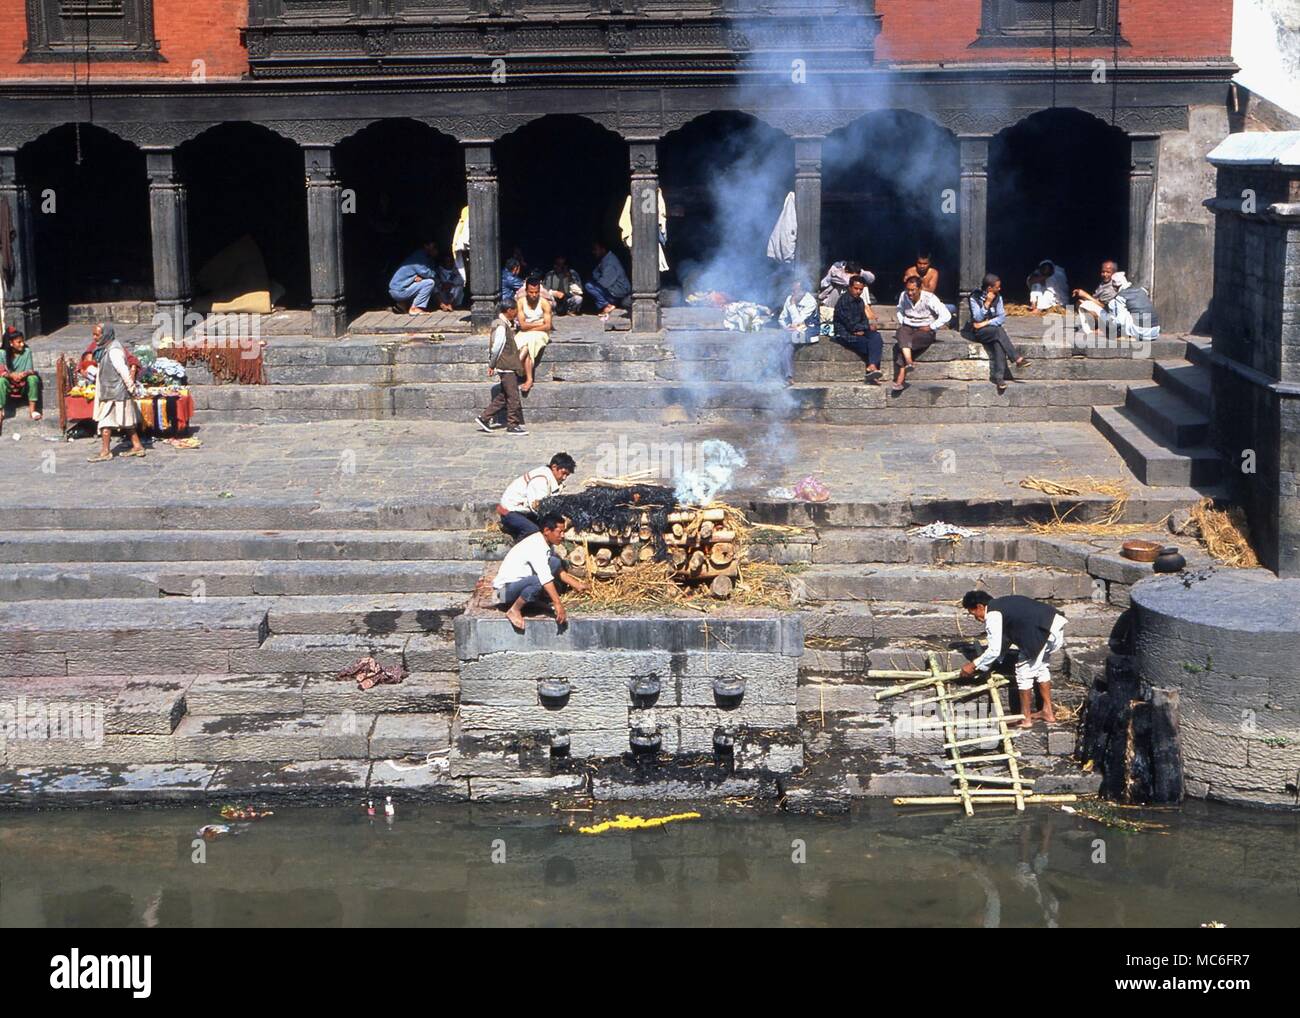 Hindu Einäscherung Einäscherung einer Leiche durch den Bagmati River (Kathmandu Tal). Die Leiche, entfernt der Kleidung unter dem Stroh, werden verbrannt. Theshes werden dann in den Fluss geworfen. Stockfoto